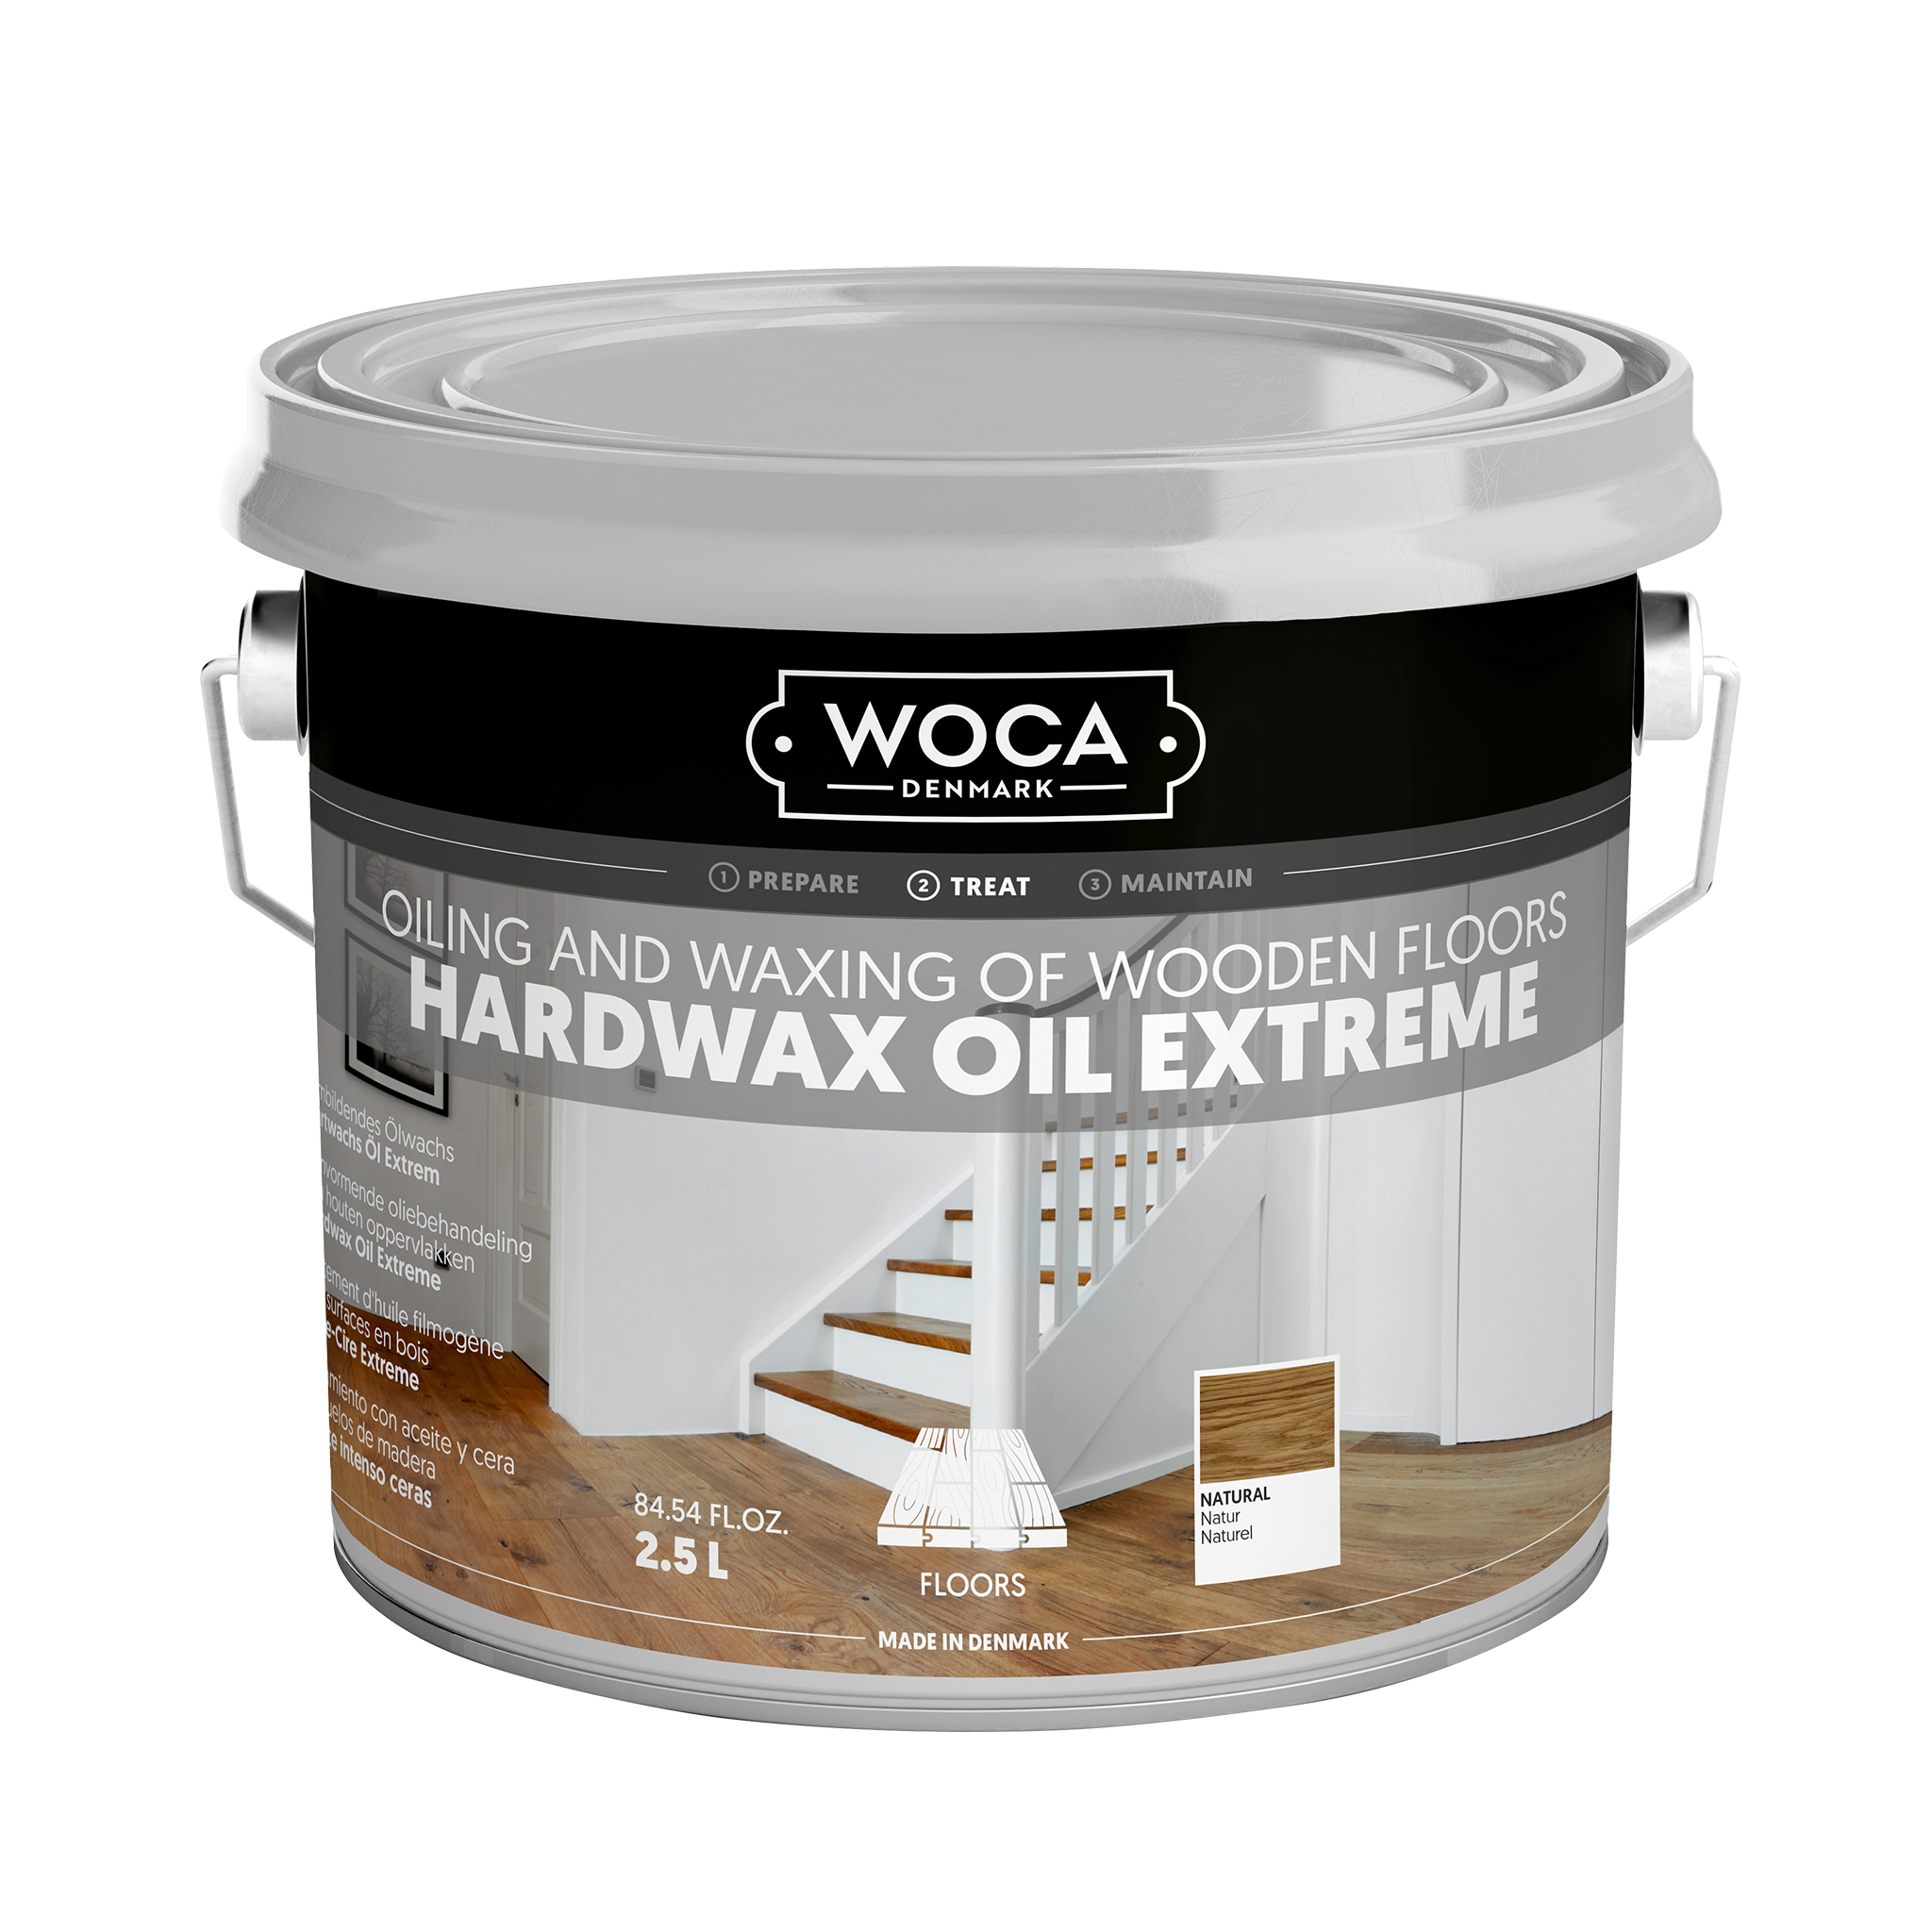 WOCA Hardwax Oil nature 2,5L.